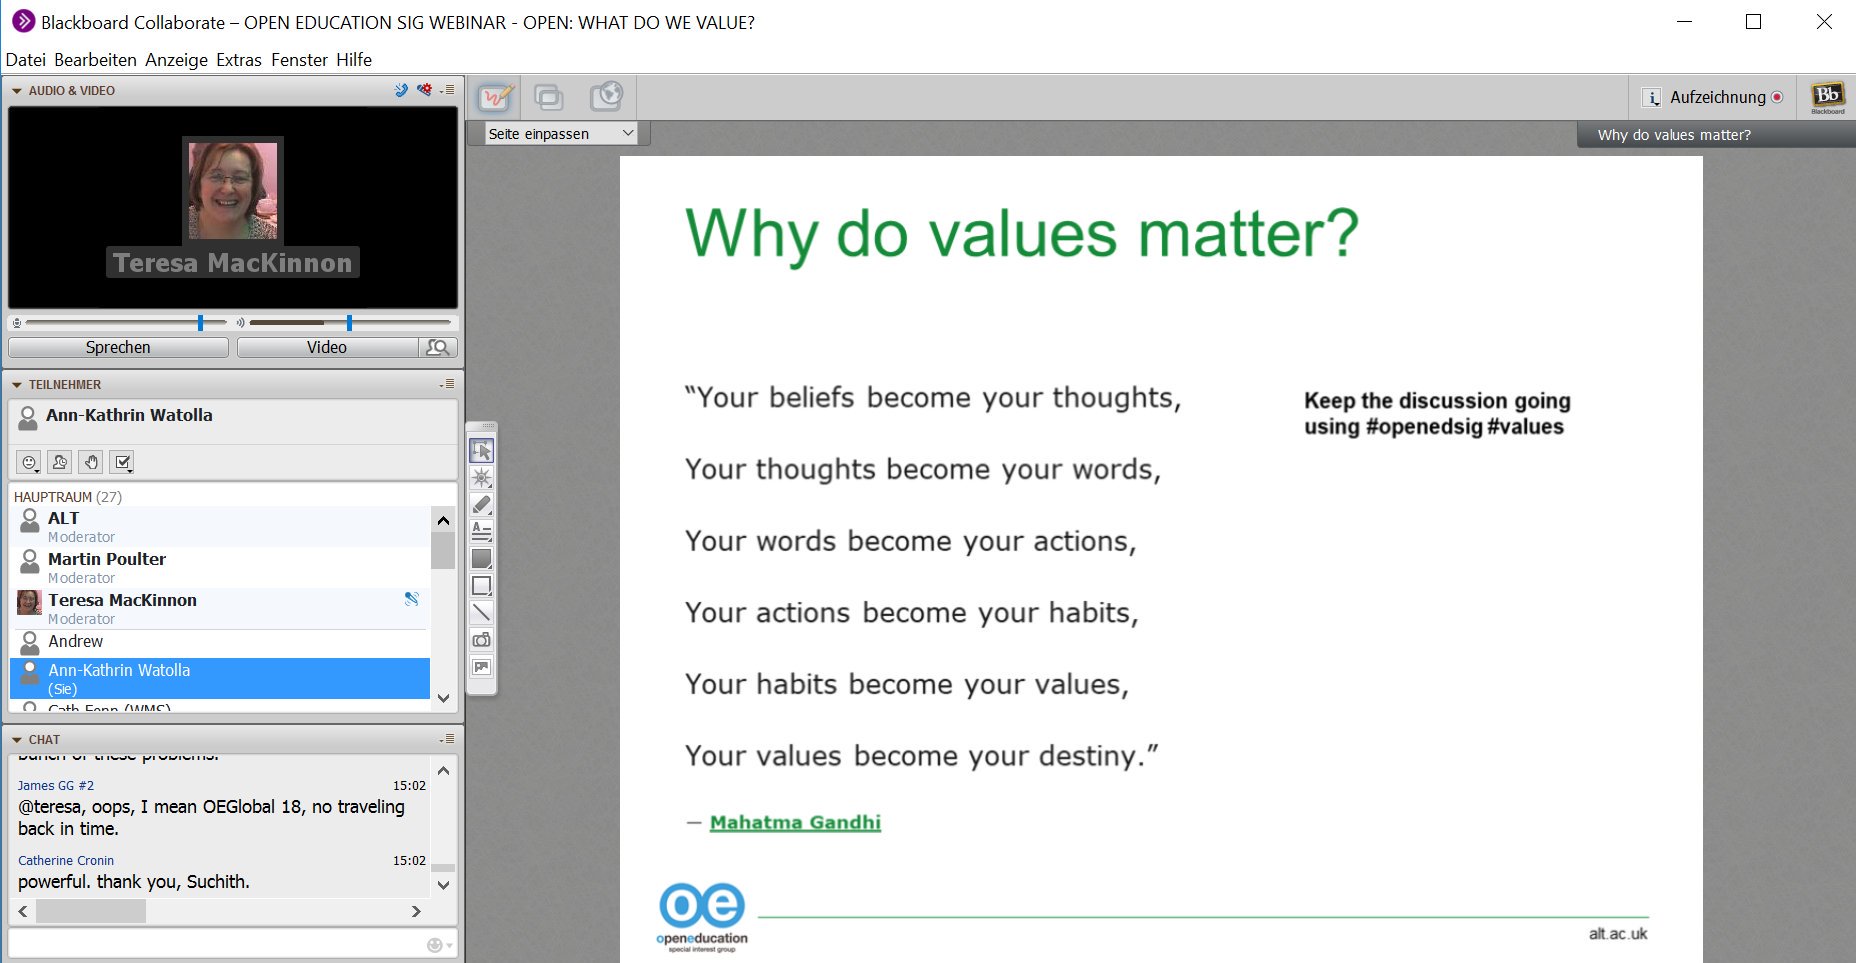 Why do values matter? #openedsig #altc https://t.co/nYmNtoQWbm